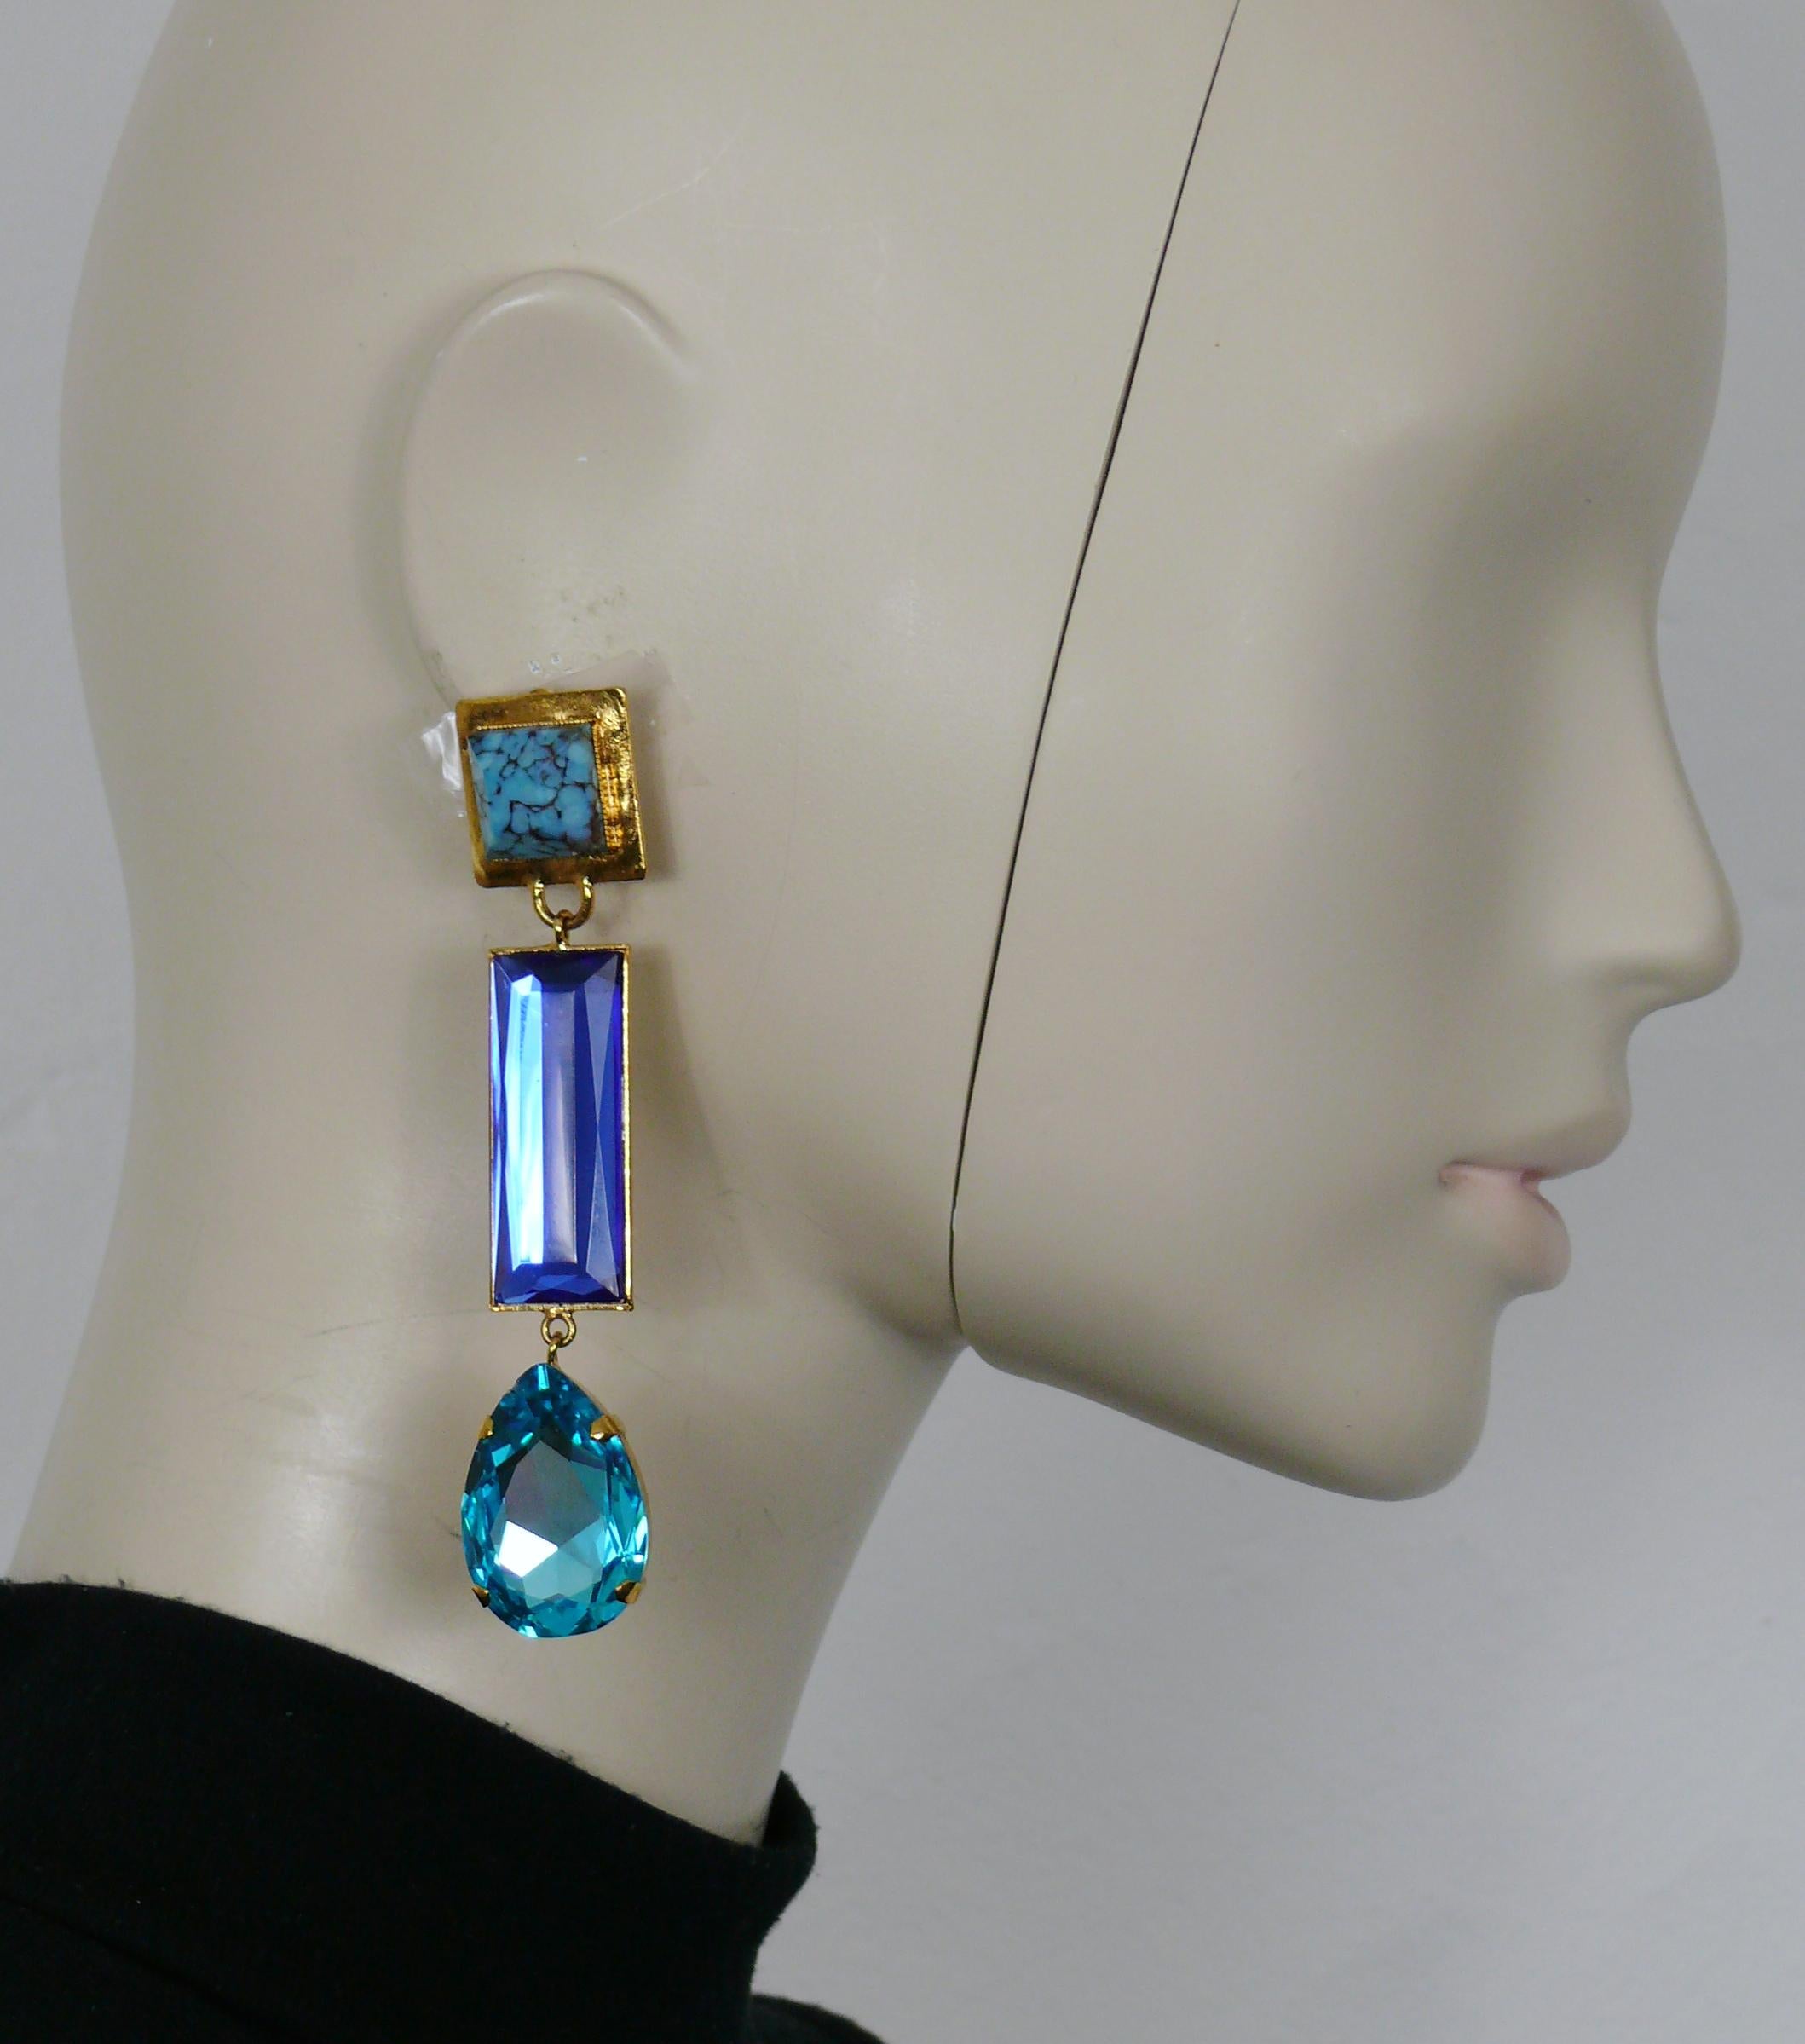 Boucles d'oreilles pendantes (clip-on) vintage YVES SAINT LAURENT en ton or, ornées d'un faux cabochon turquoise et de cristaux bleus.

Embossé YSL.

Mesures indicatives : hauteur env. 10 cm (3.94 inches) / largeur max. env. 2 cm (0.79